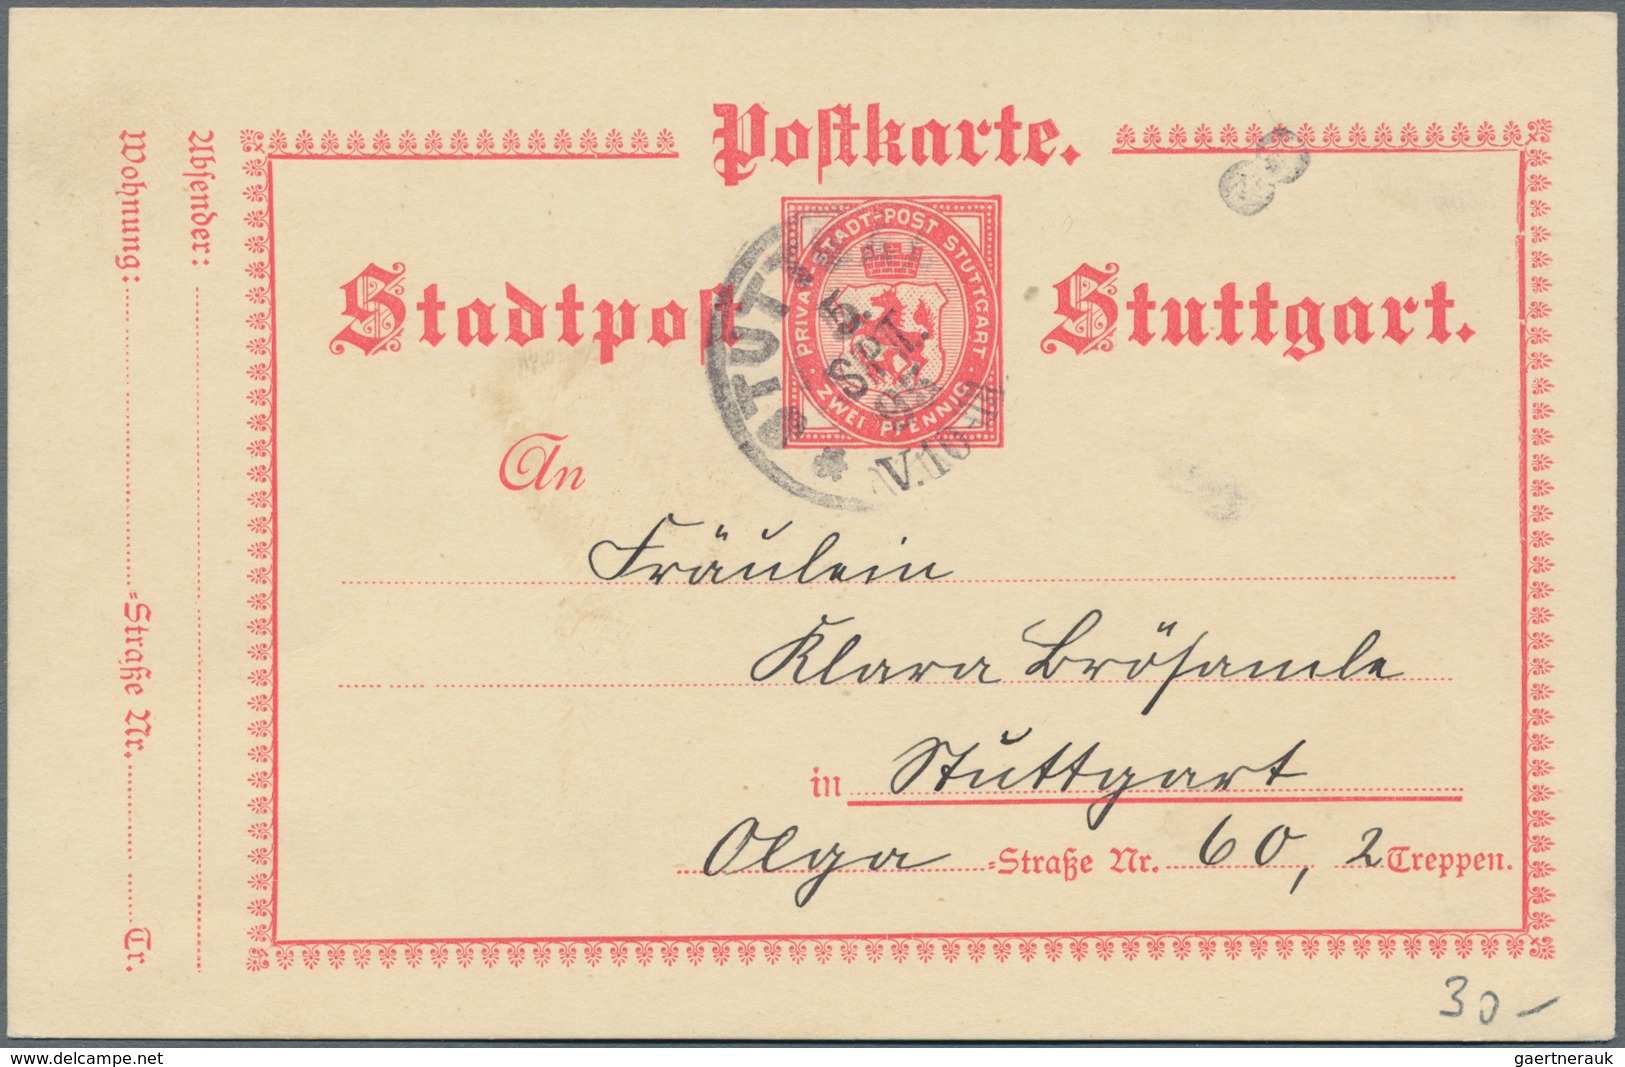 Deutsches Reich - Privatpost (Stadtpost): 1886 - 1889 (ca.), umfangreicher Ganzsachen-Posten der PRI